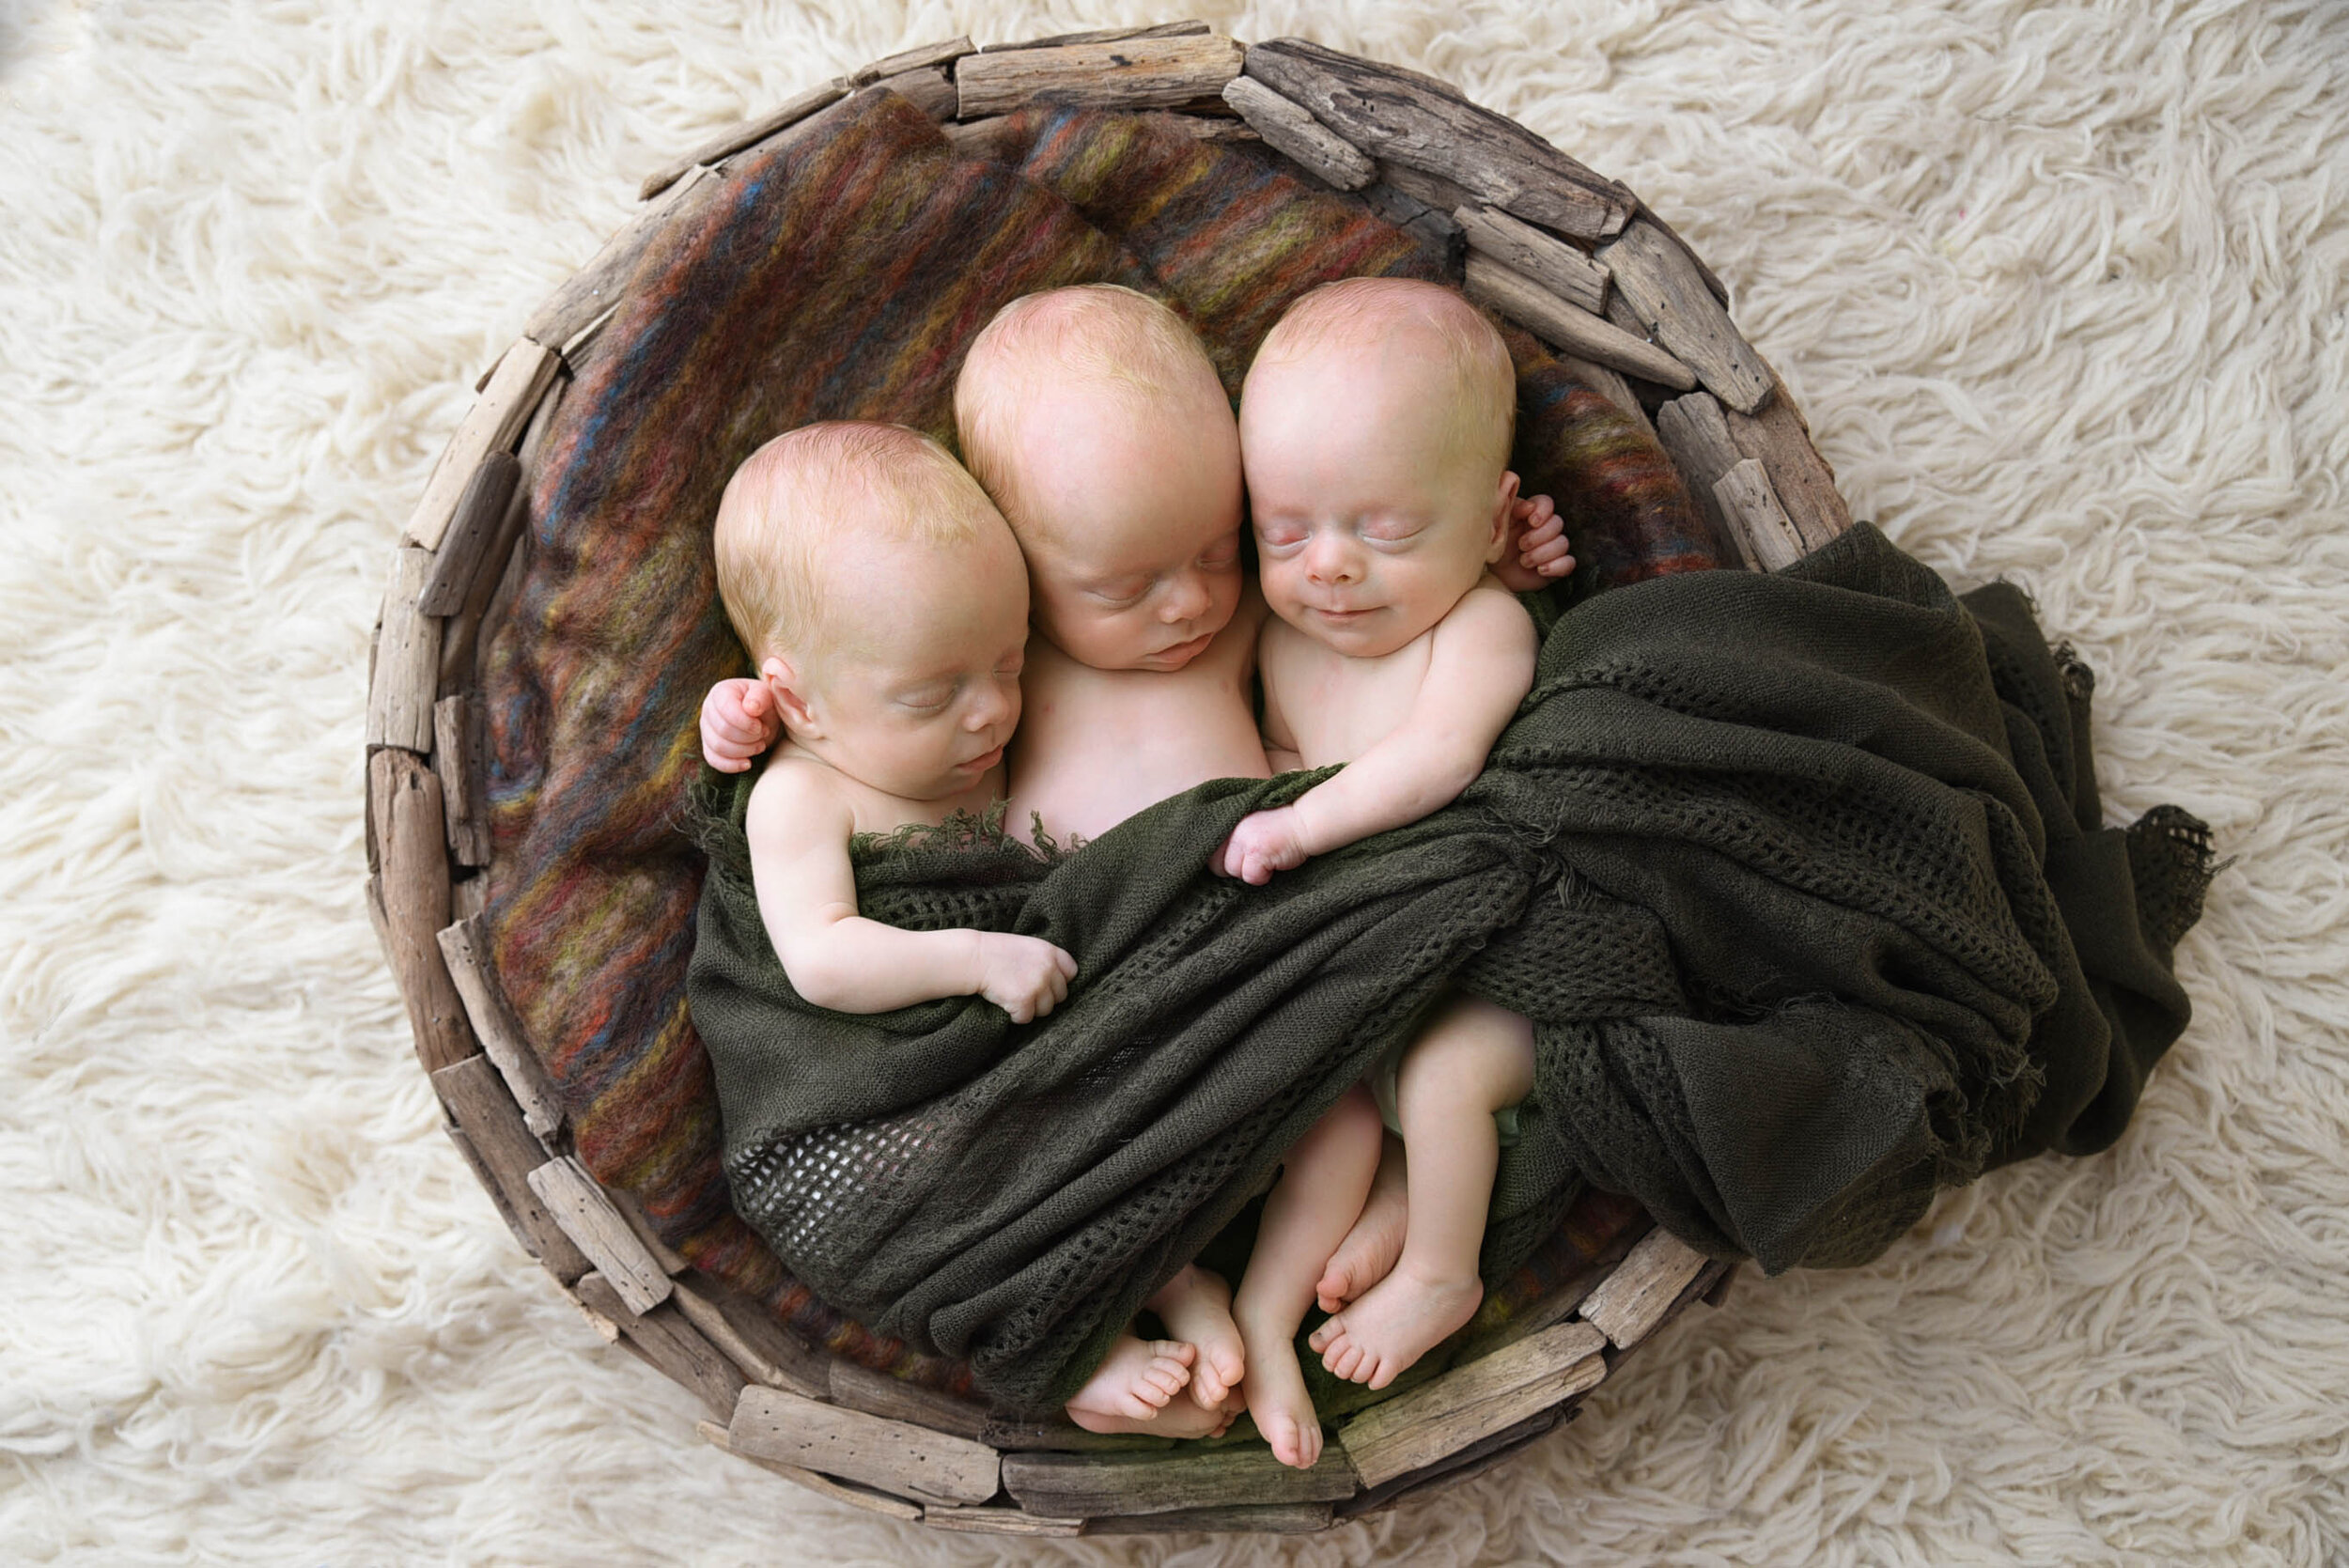 OKC photo newborns